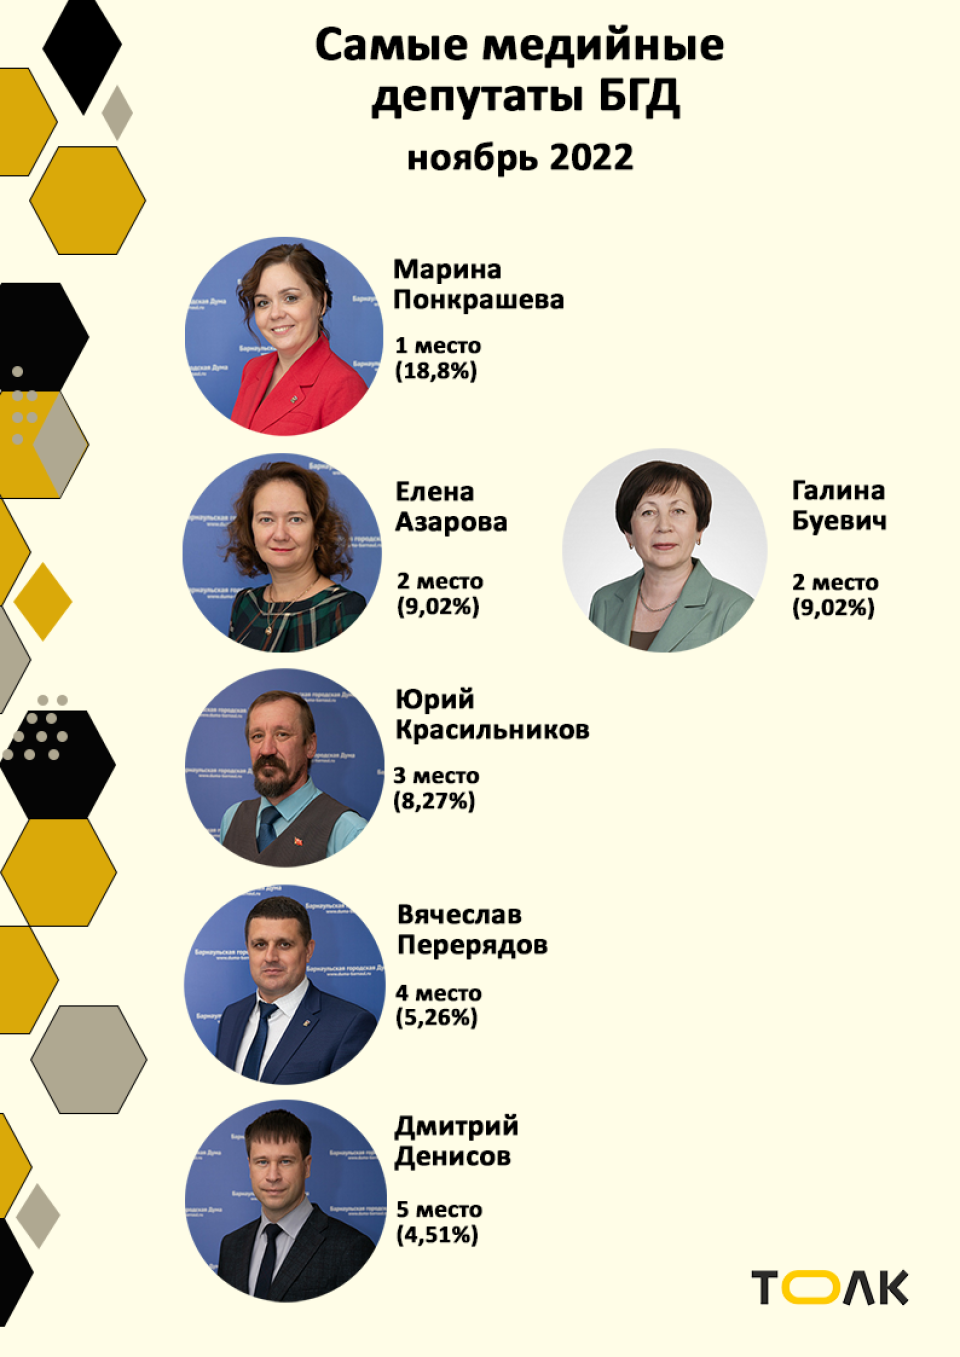 Рейтинг медийности депутатов БГД, ноябрь 2022 года